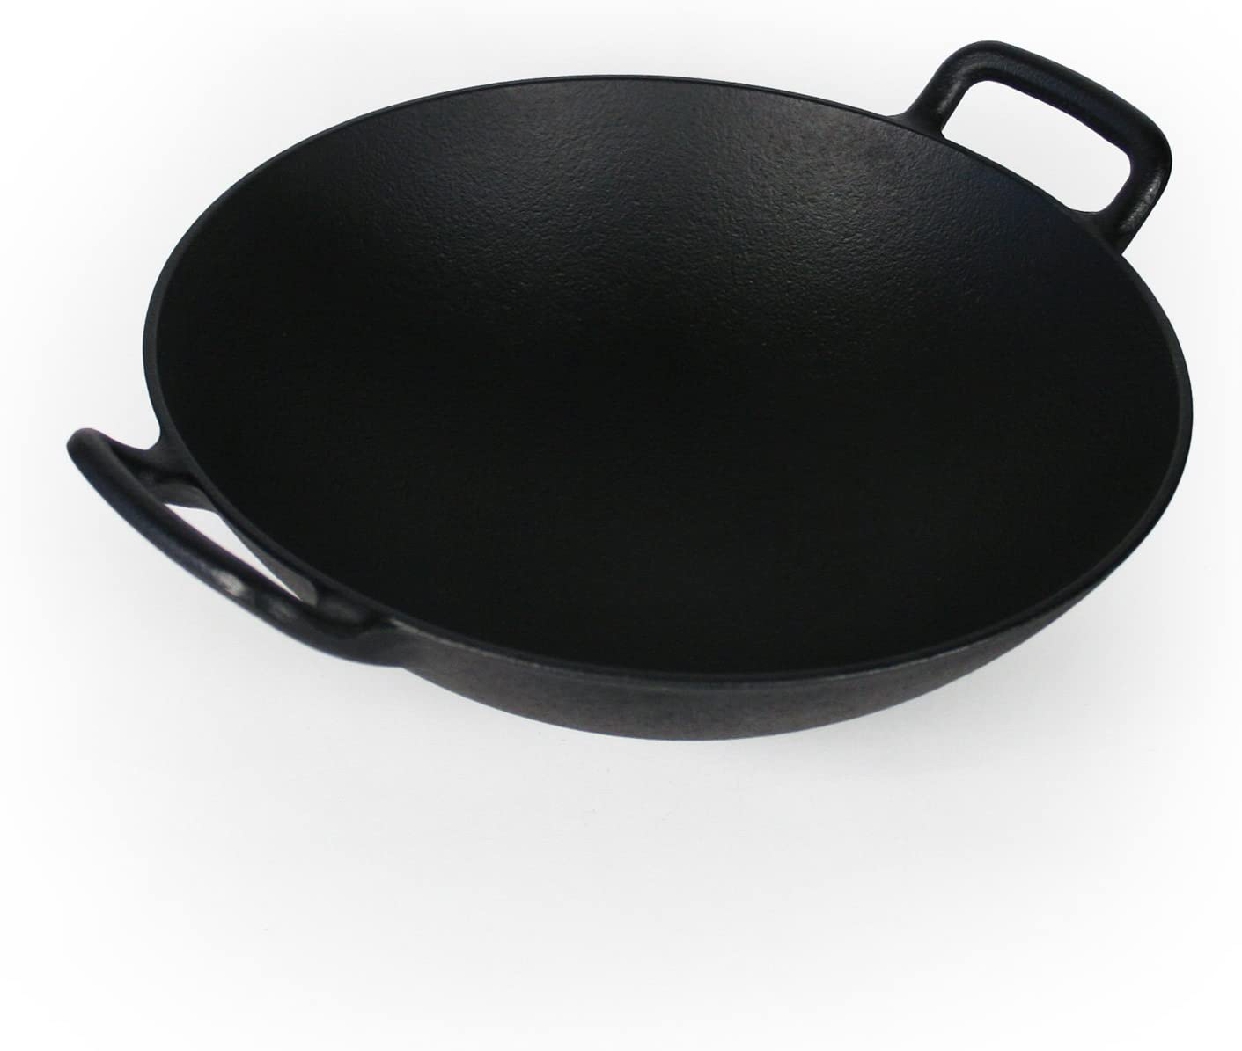 南部鉄器(ナンブテッキ) 中華鍋の商品画像1 